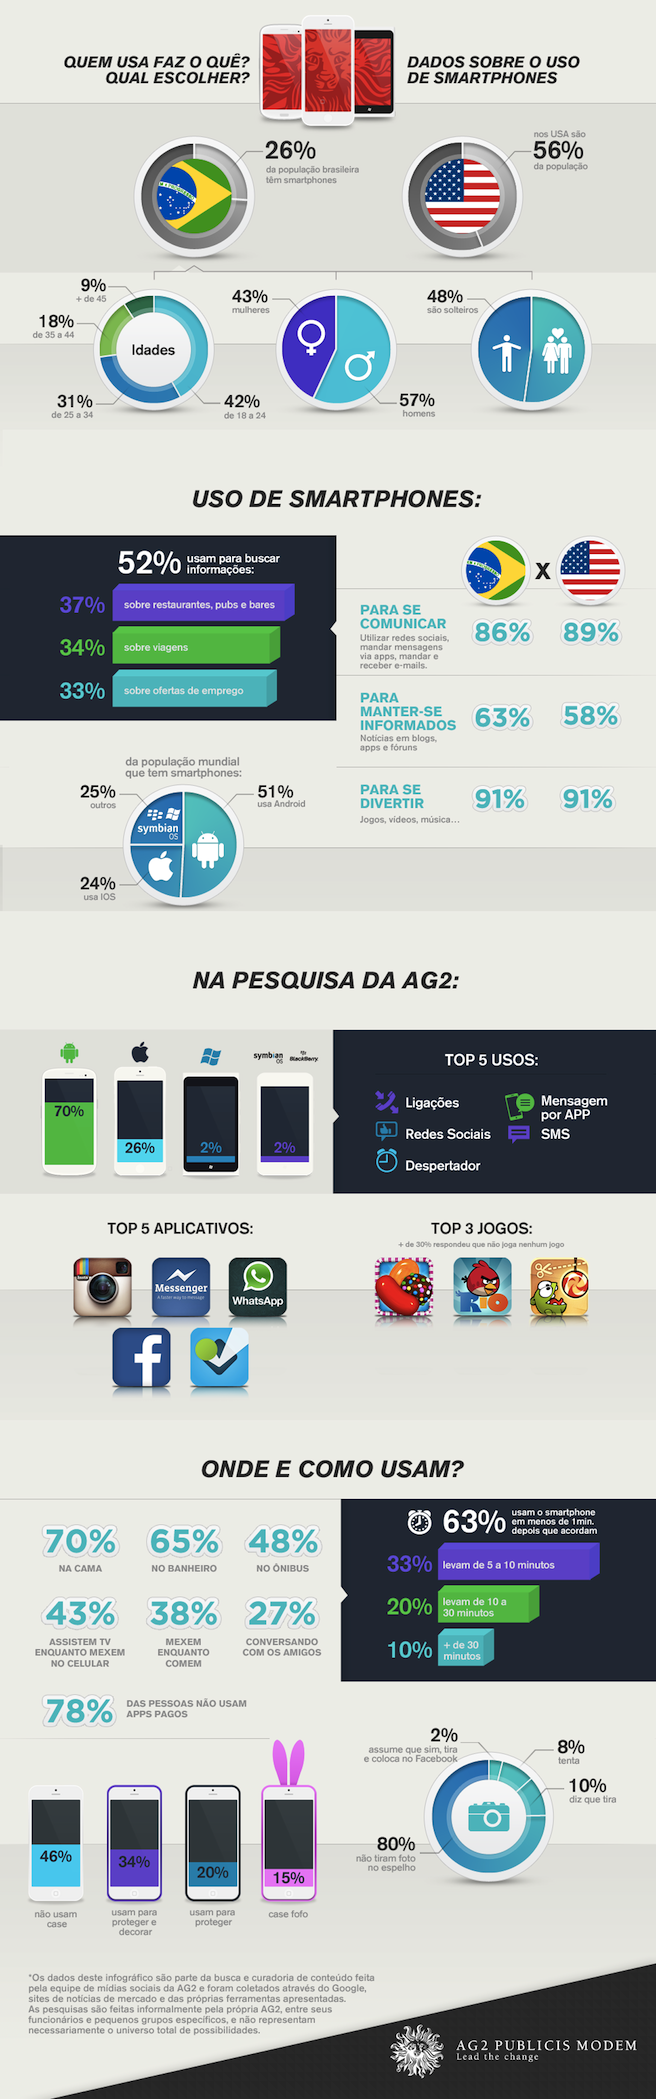 Infografico AG2 sobre o uso de smartphones no Brasil